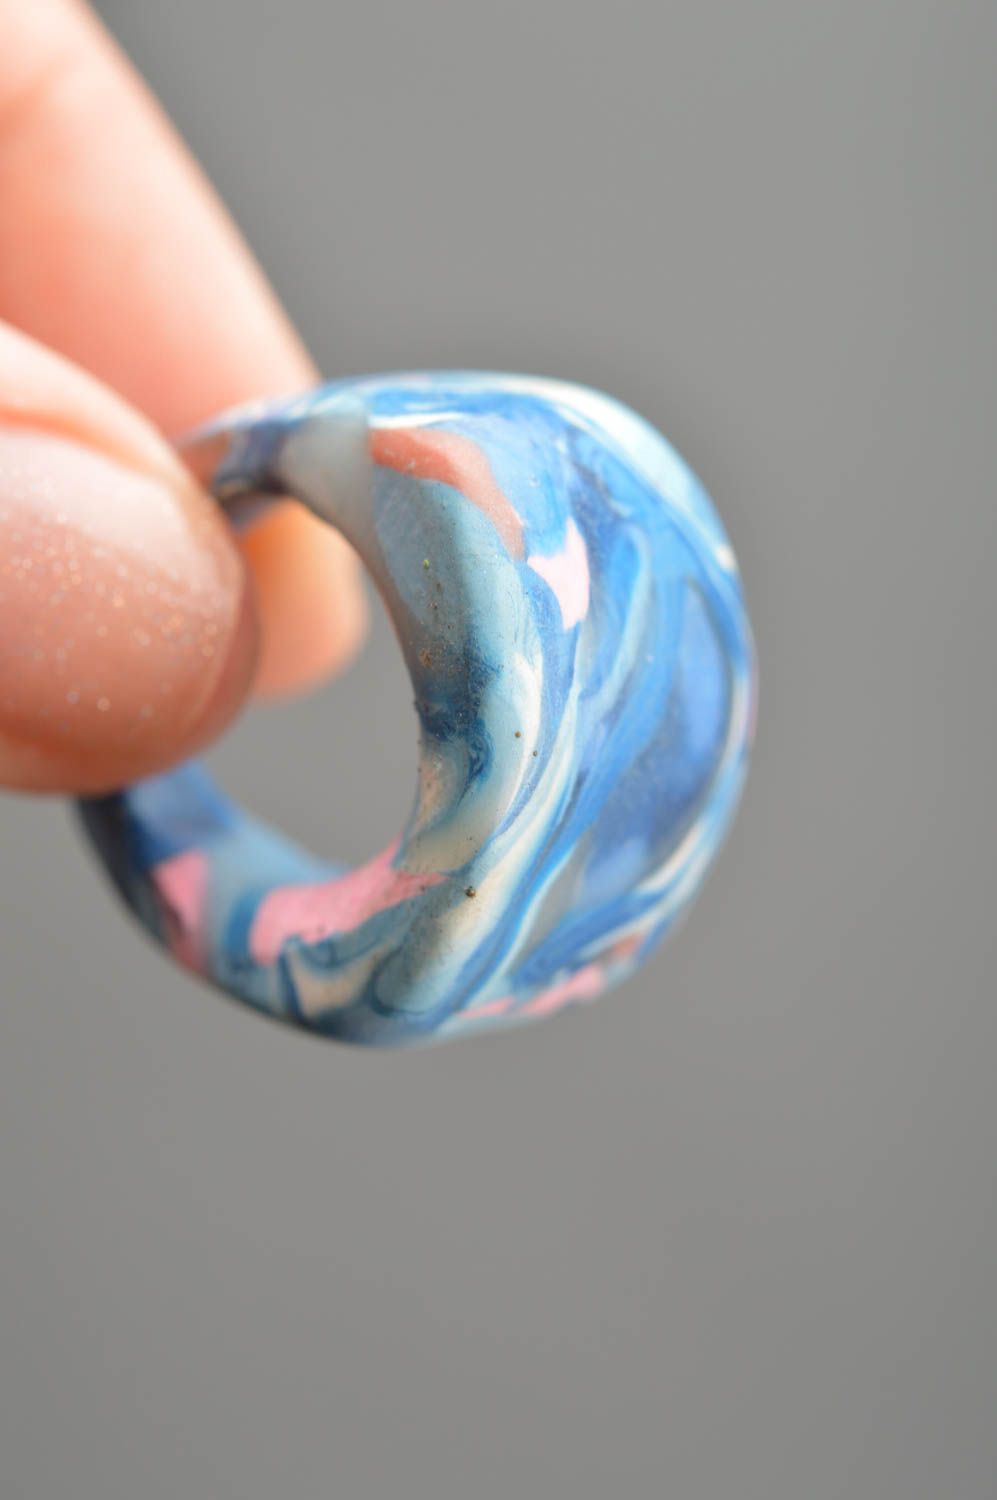 Оригинальное кольцо ручной работы из полимерной глины в голубых тонах  фото 2